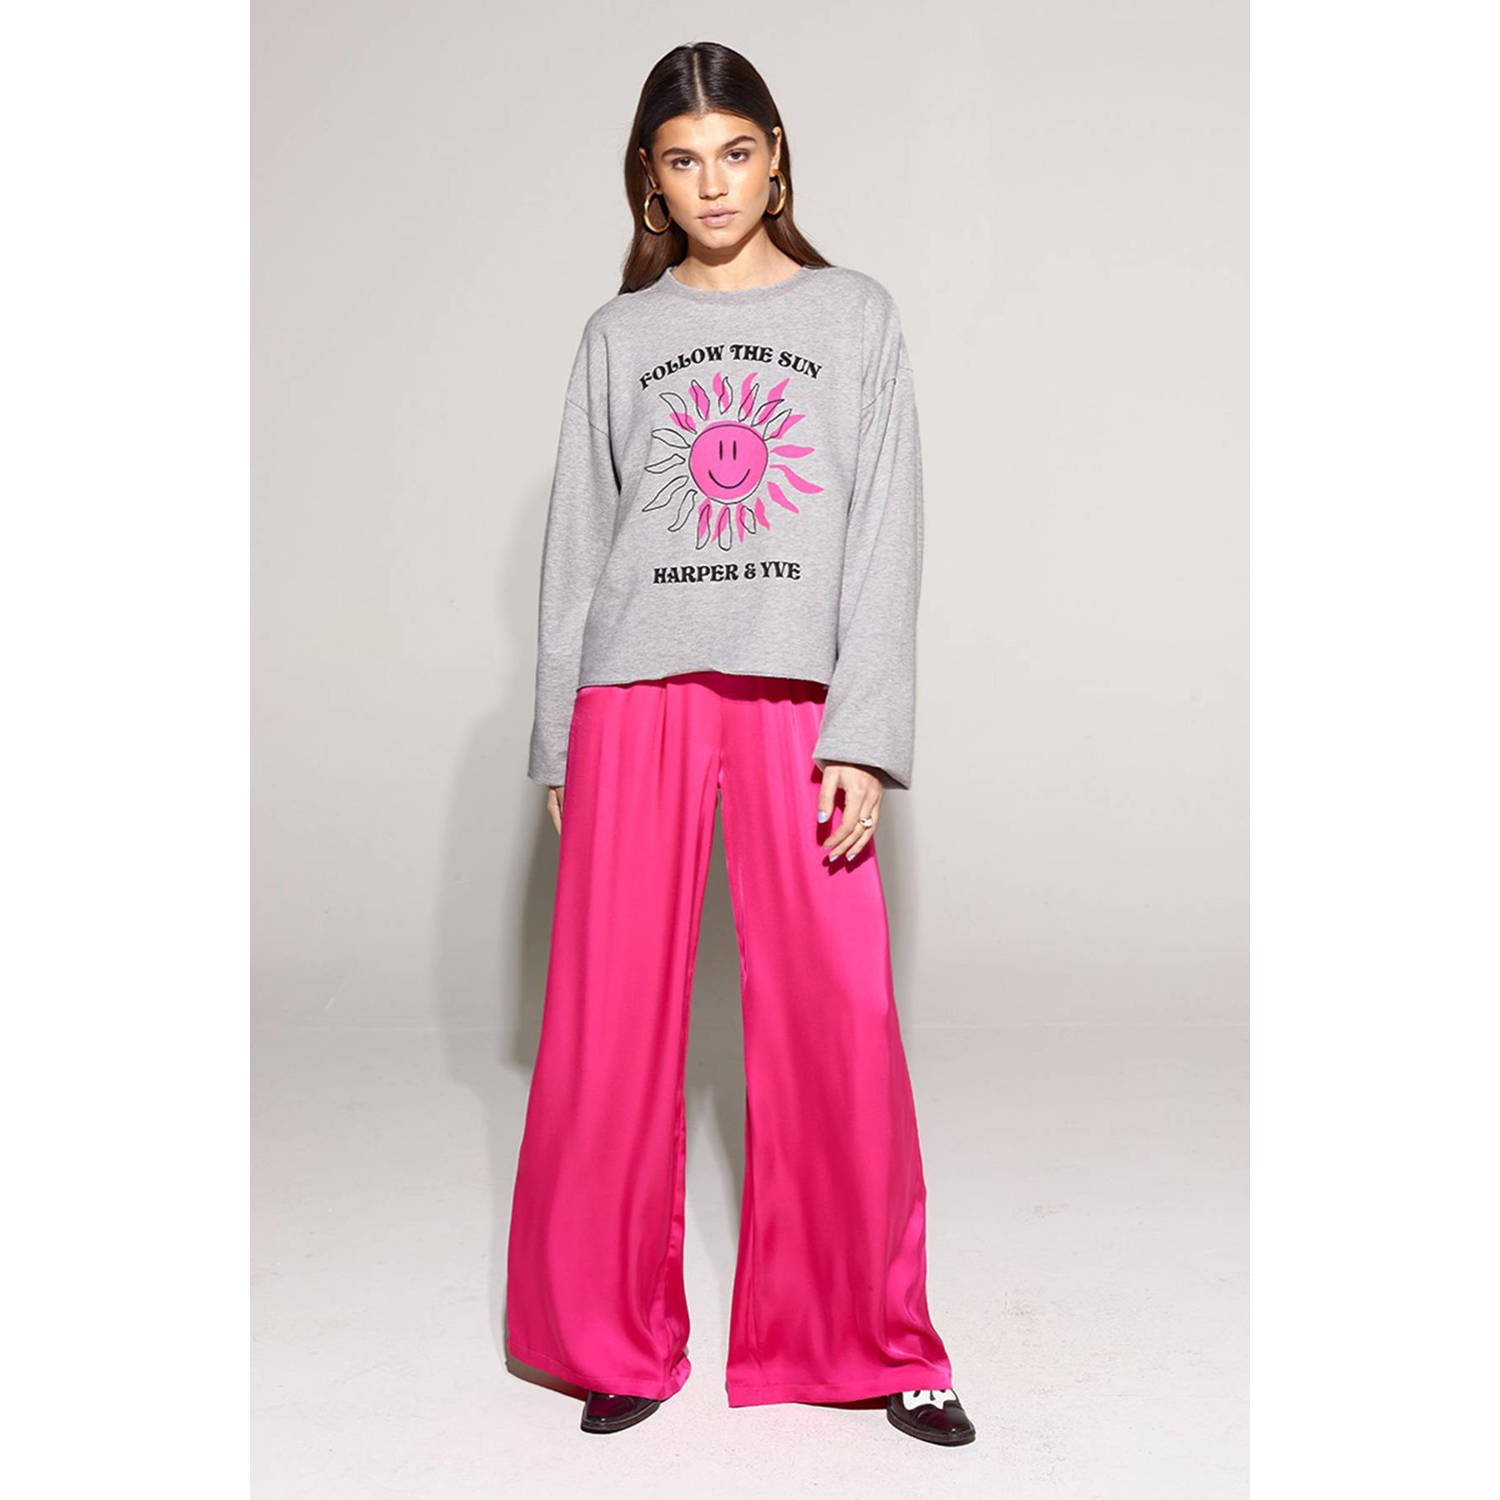 HARPER & YVE sweater SMILEY met printopdruk lichtgrijs roze zwart